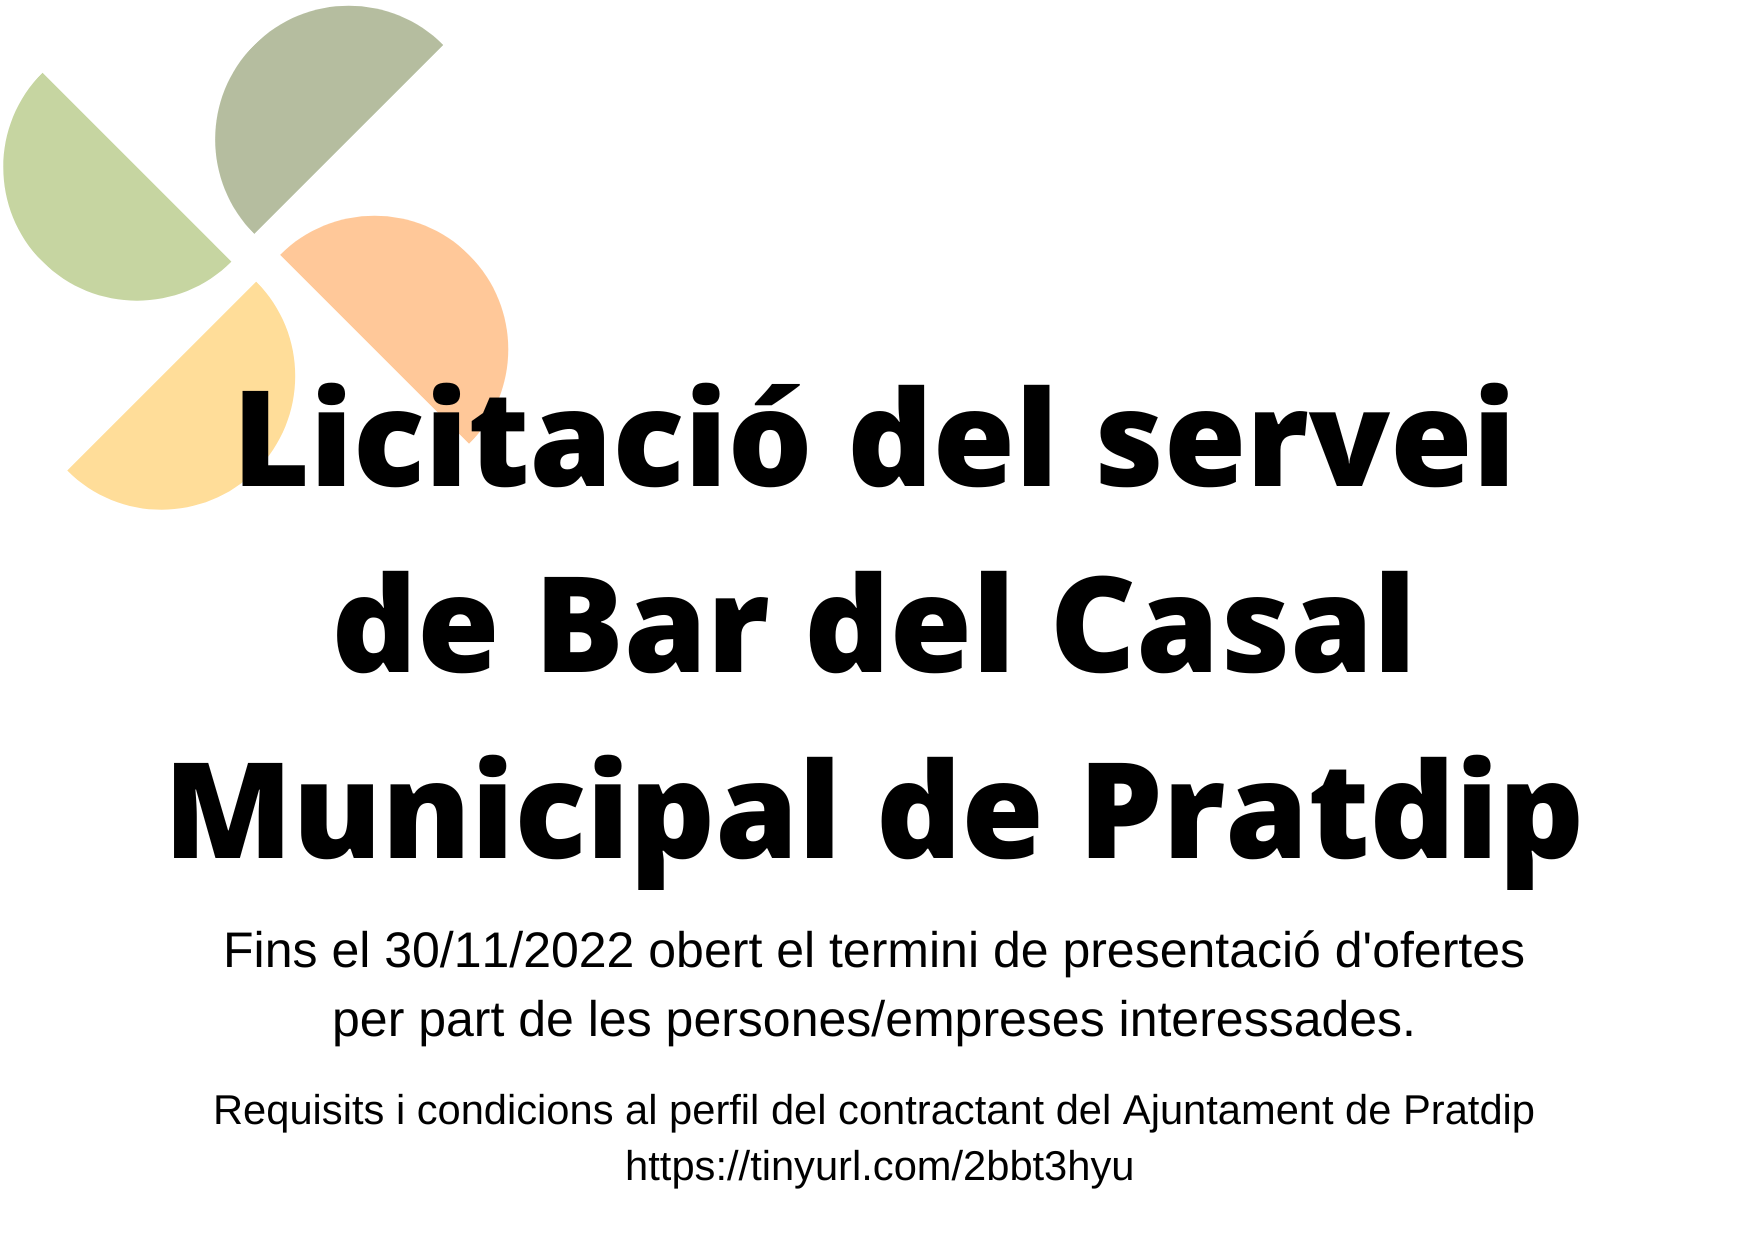 L'Ajuntament de Pratdip treu a licitació del servei de Bar del Casal Municipal